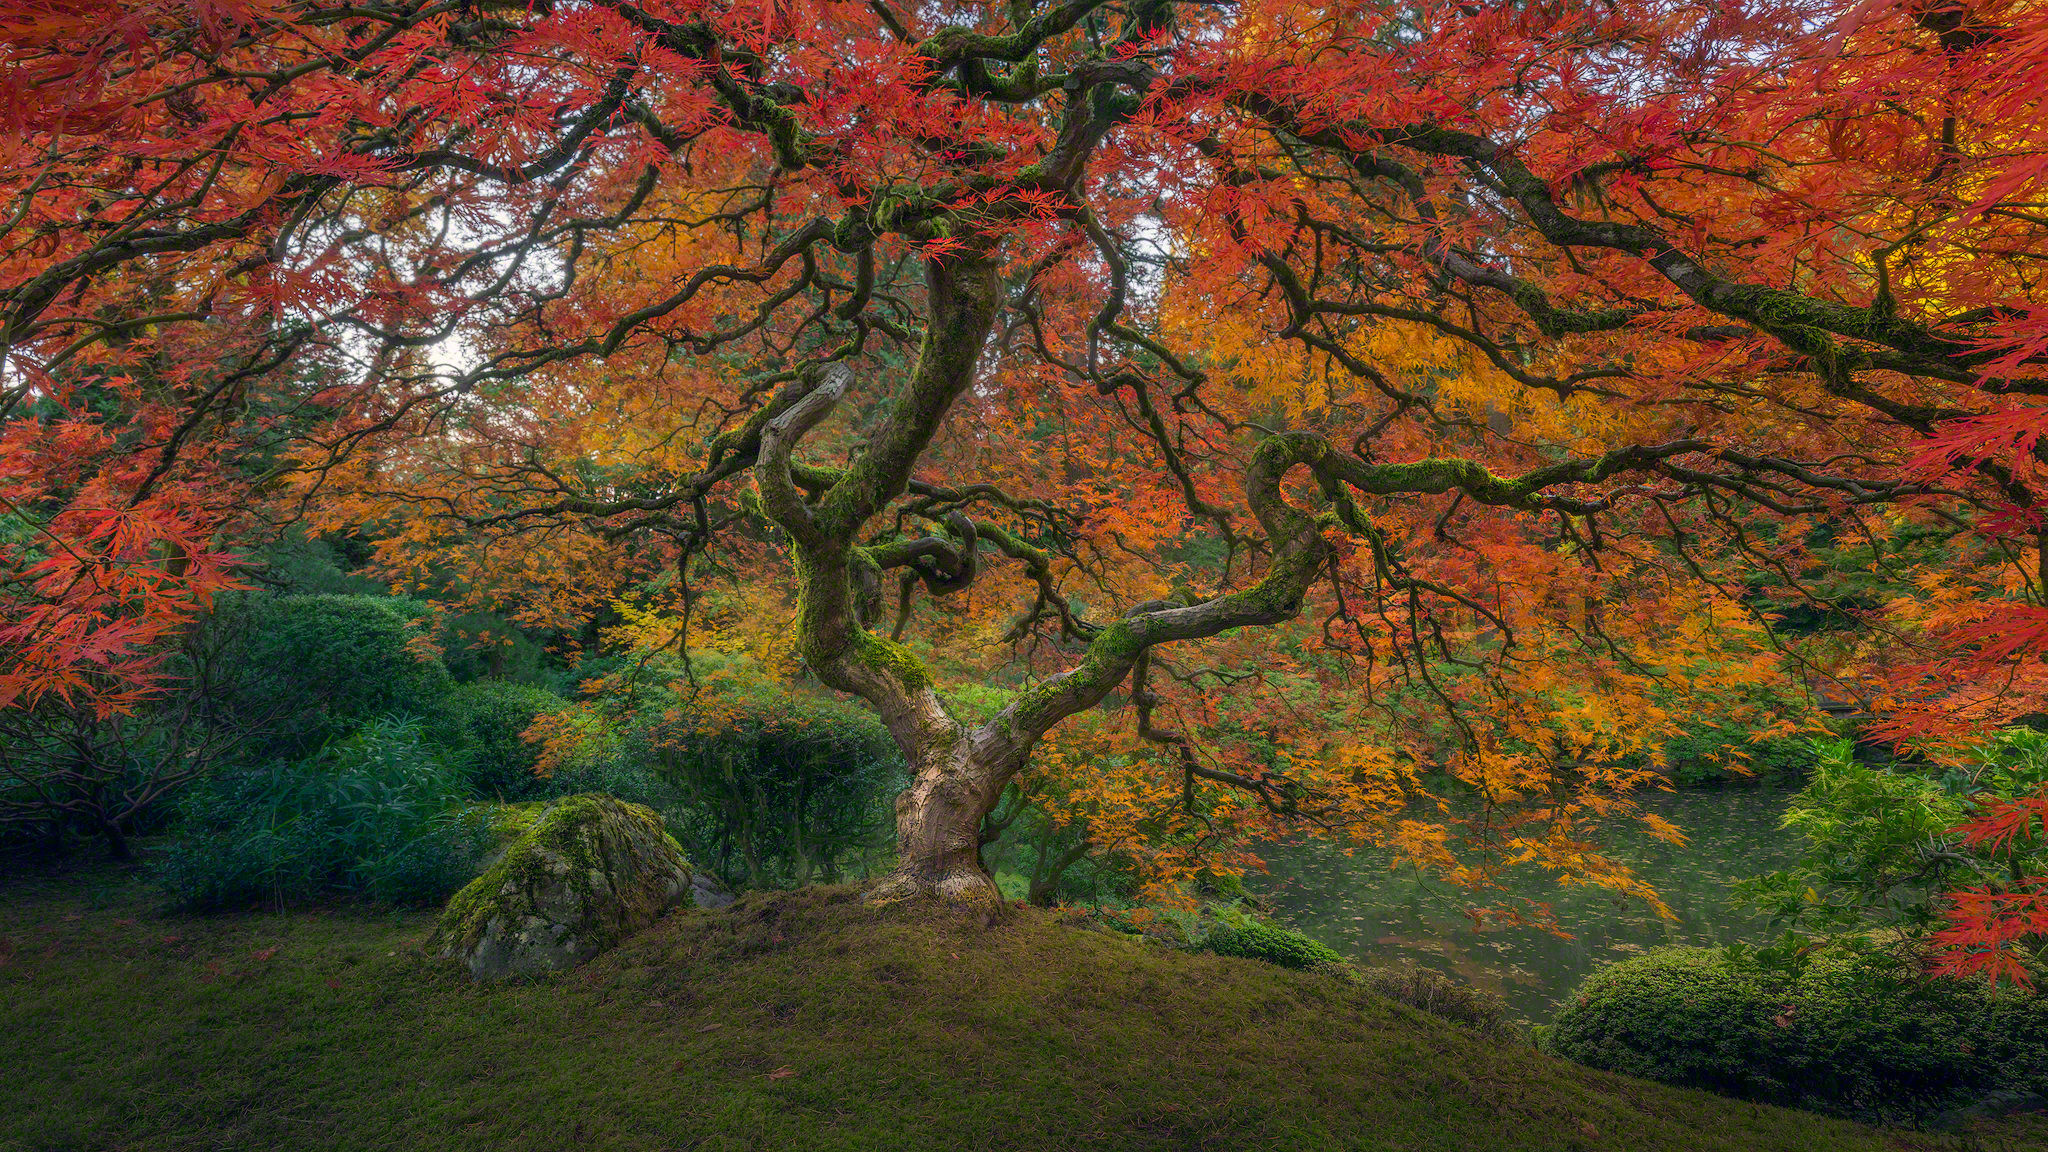 Baum Erde/natur Herbst Foliage Japanese Garden Wallpaper - Japanese Autumn - HD Wallpaper 